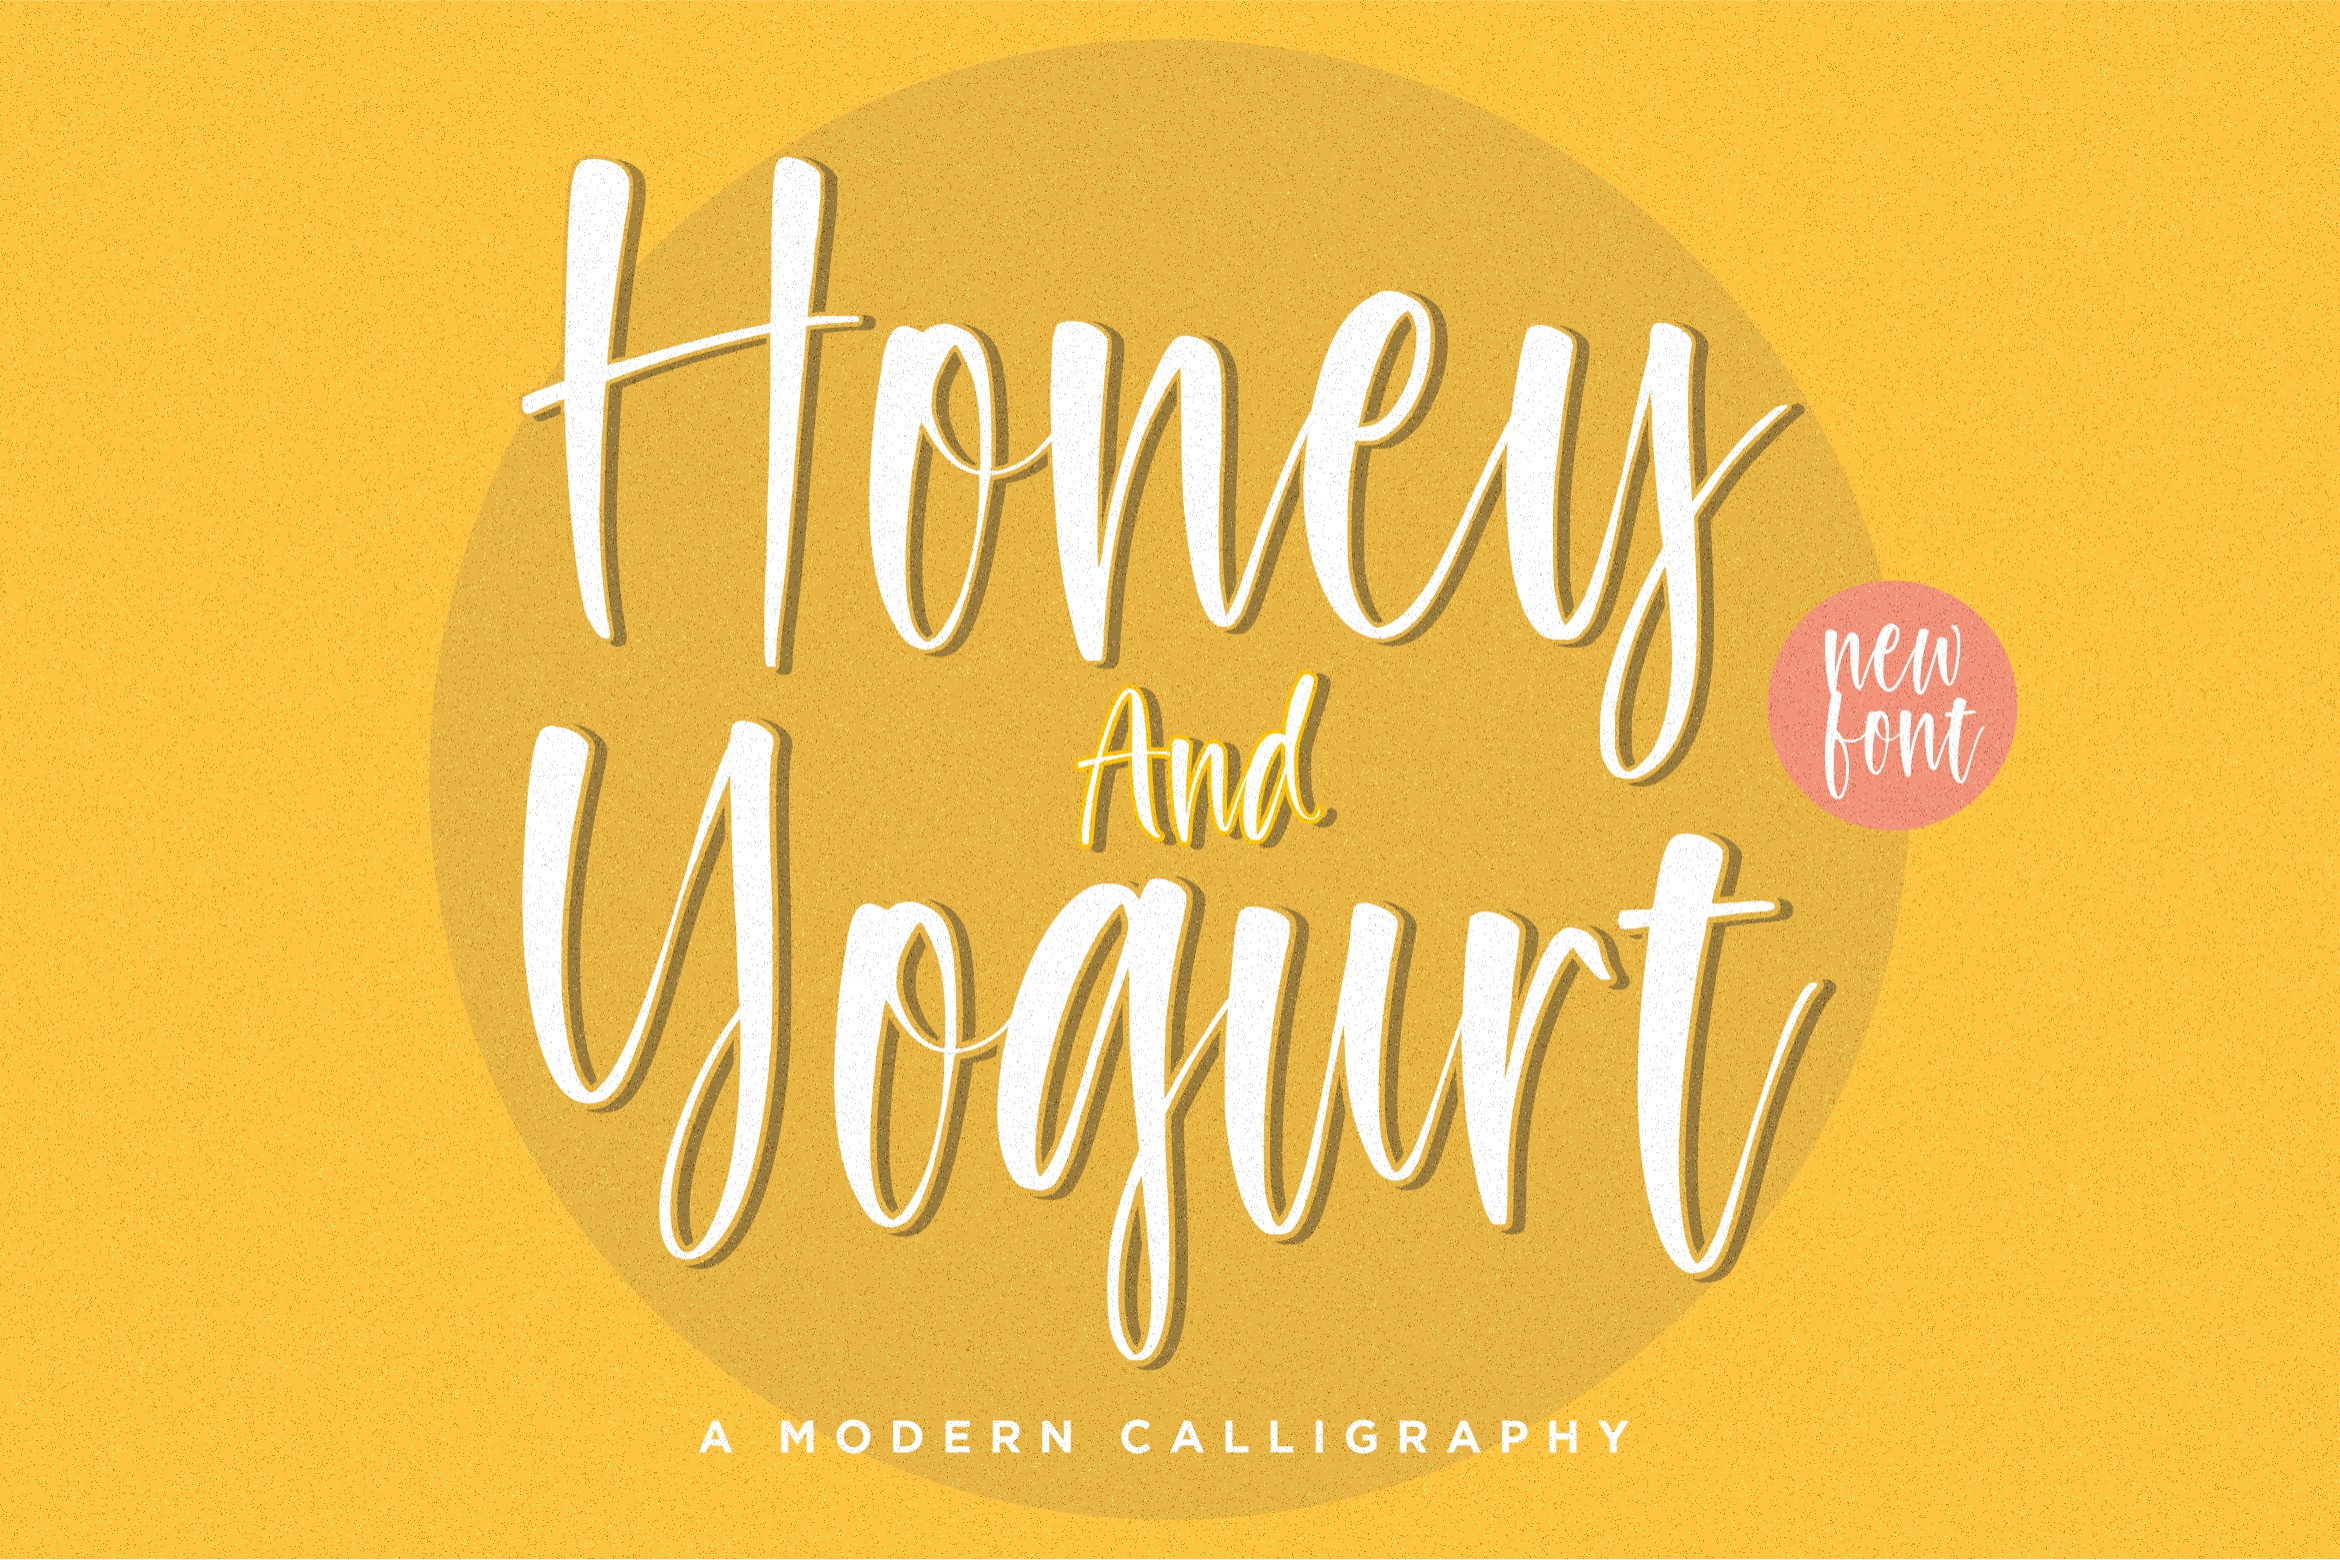 Honey and Yogurt